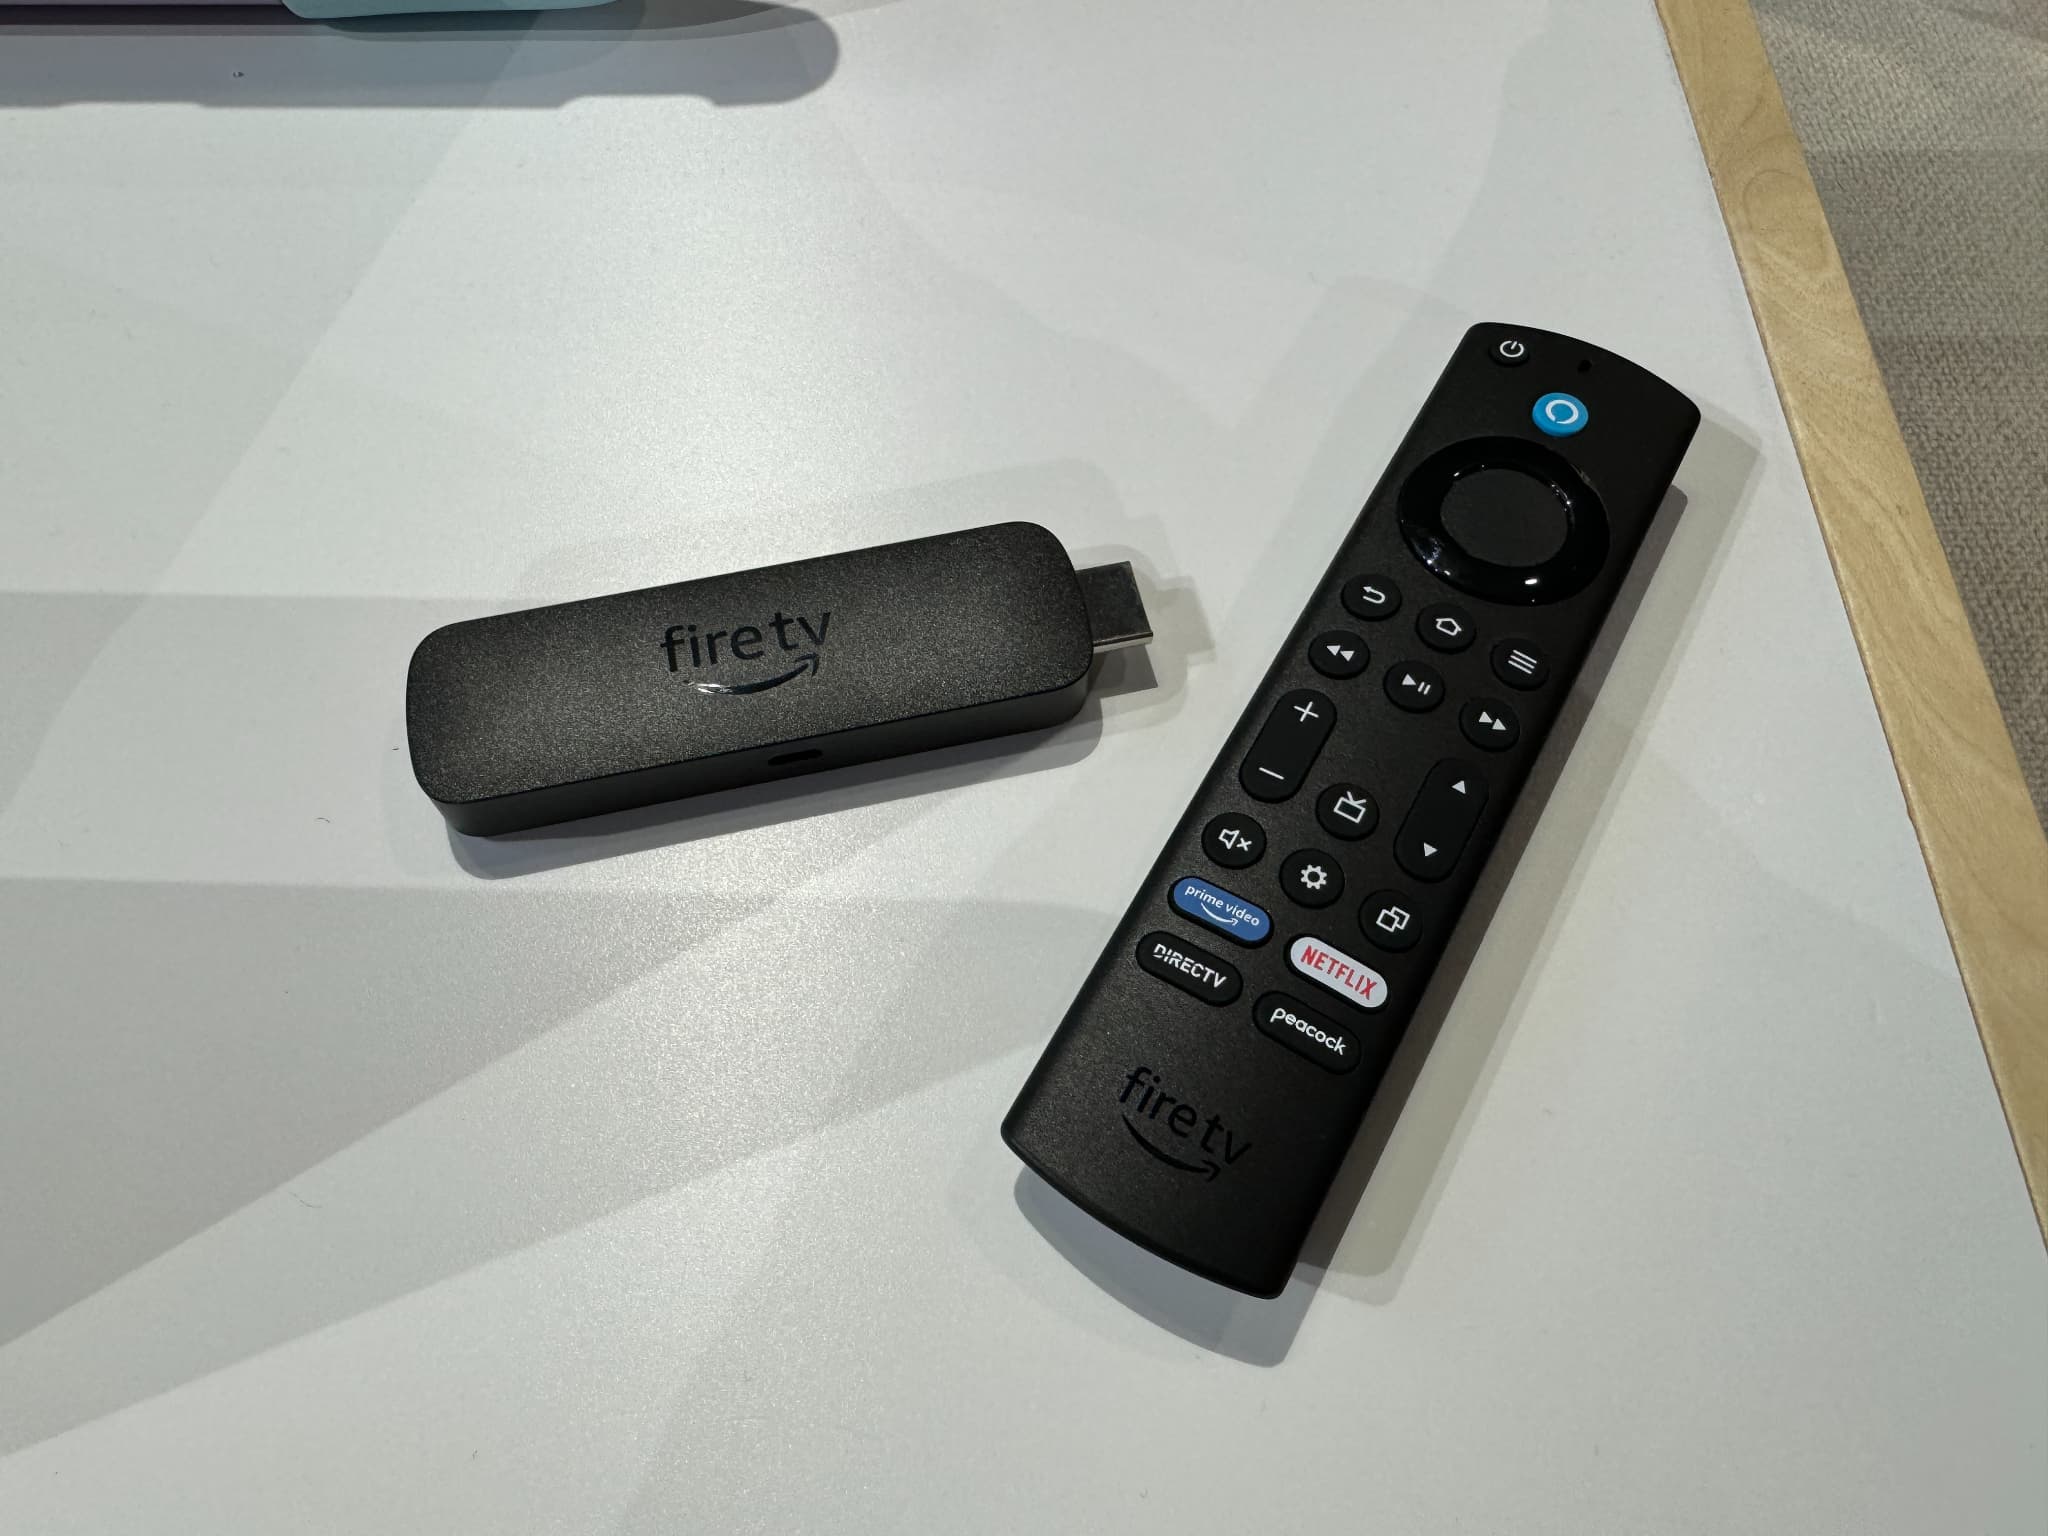 Le Fire TV Stick 4K Ultra HD nouvelle génération avec Alexa est 15